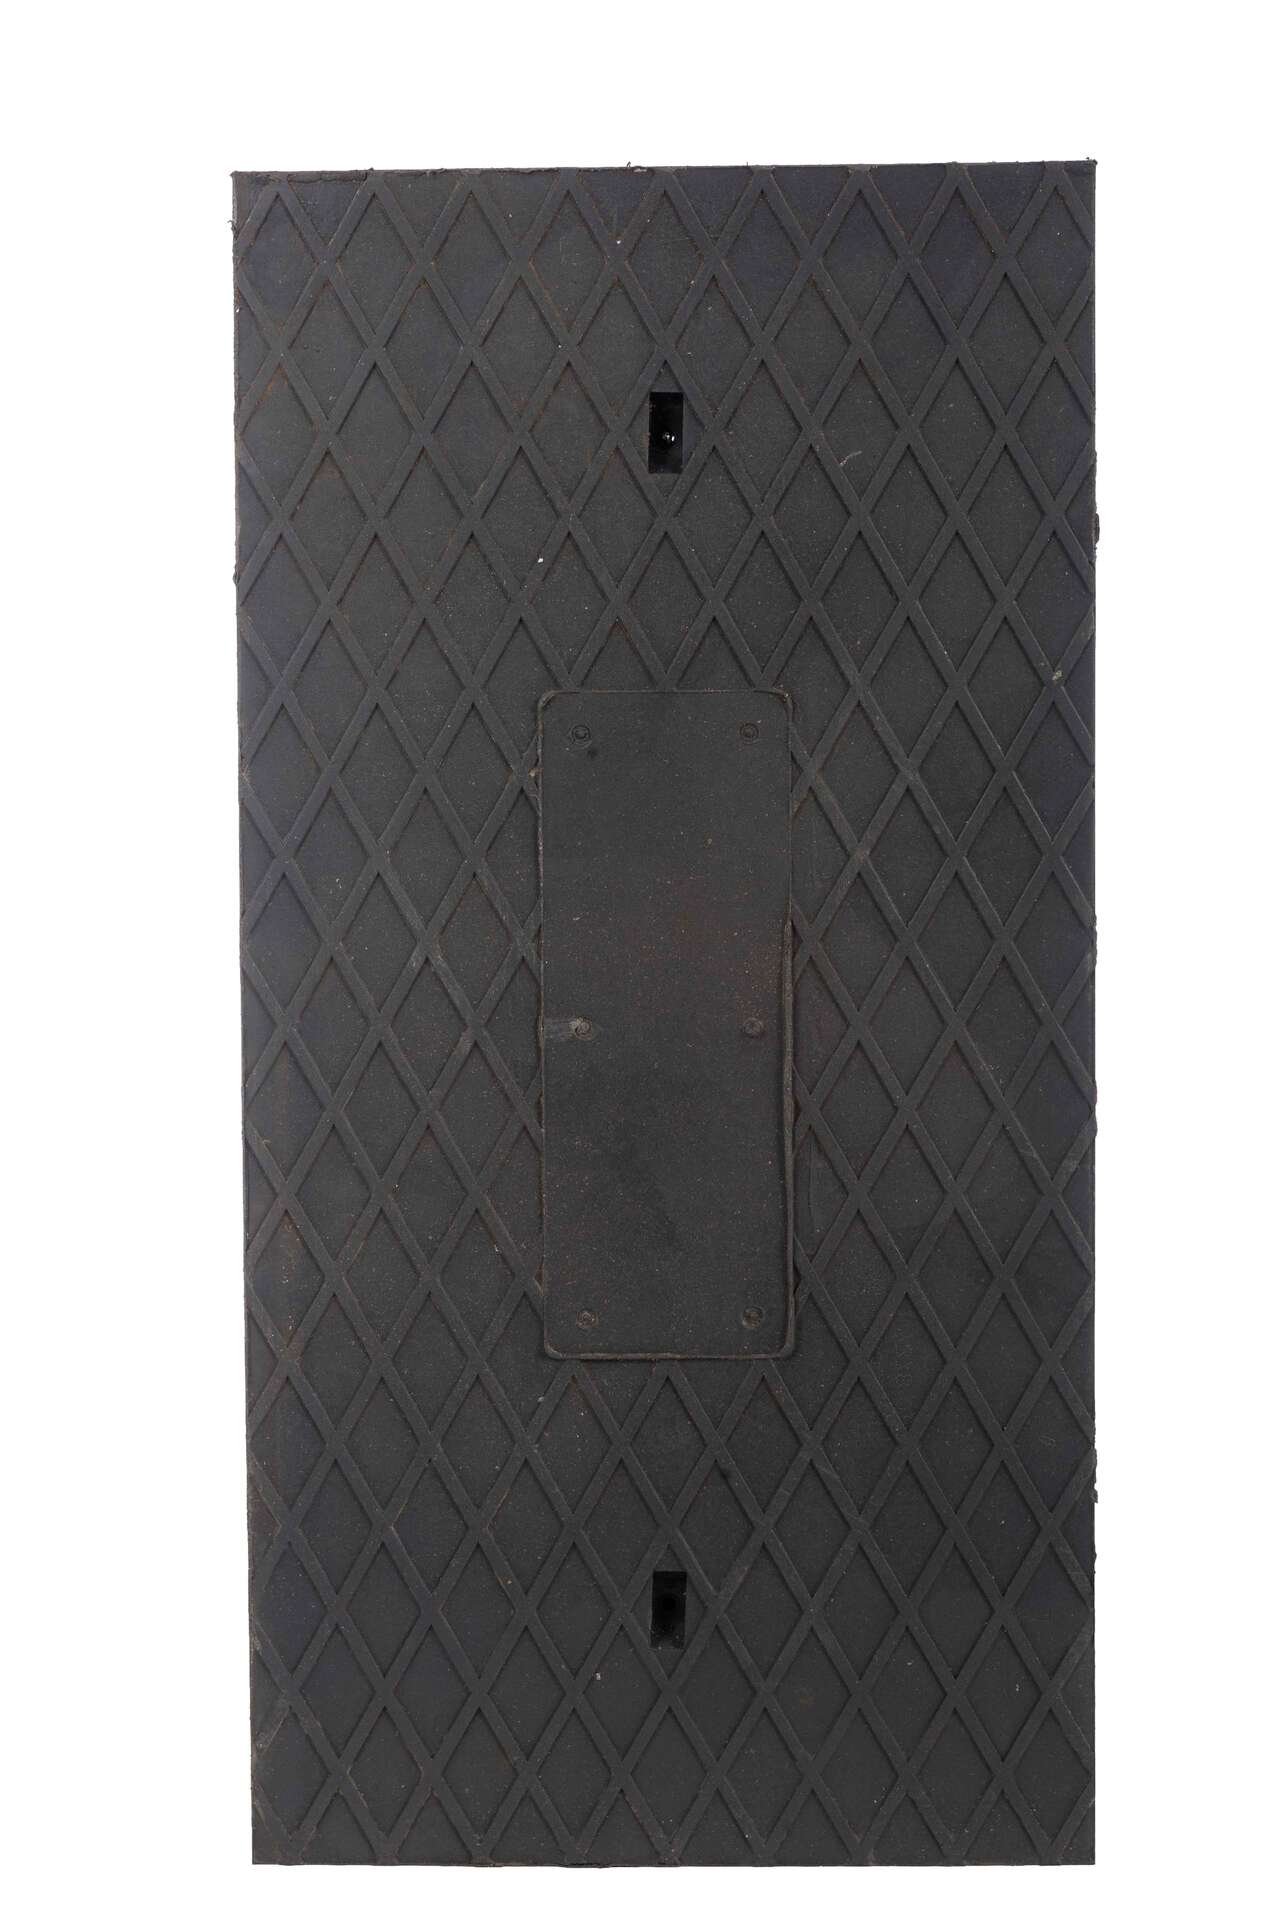 Frameless manhole cover – rectangular RCB125 1000/500/40